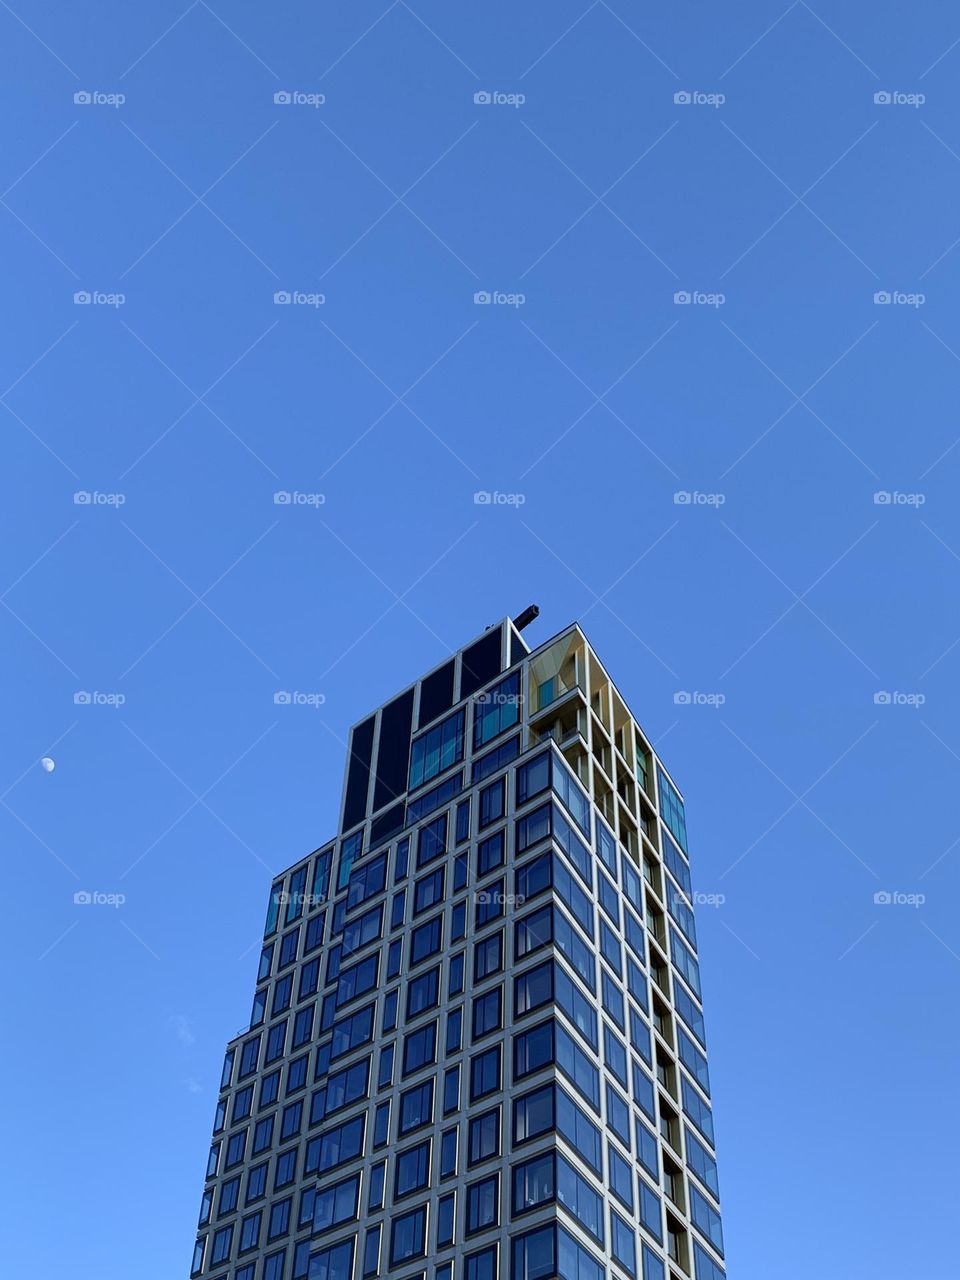 Building exterior against blue sky 